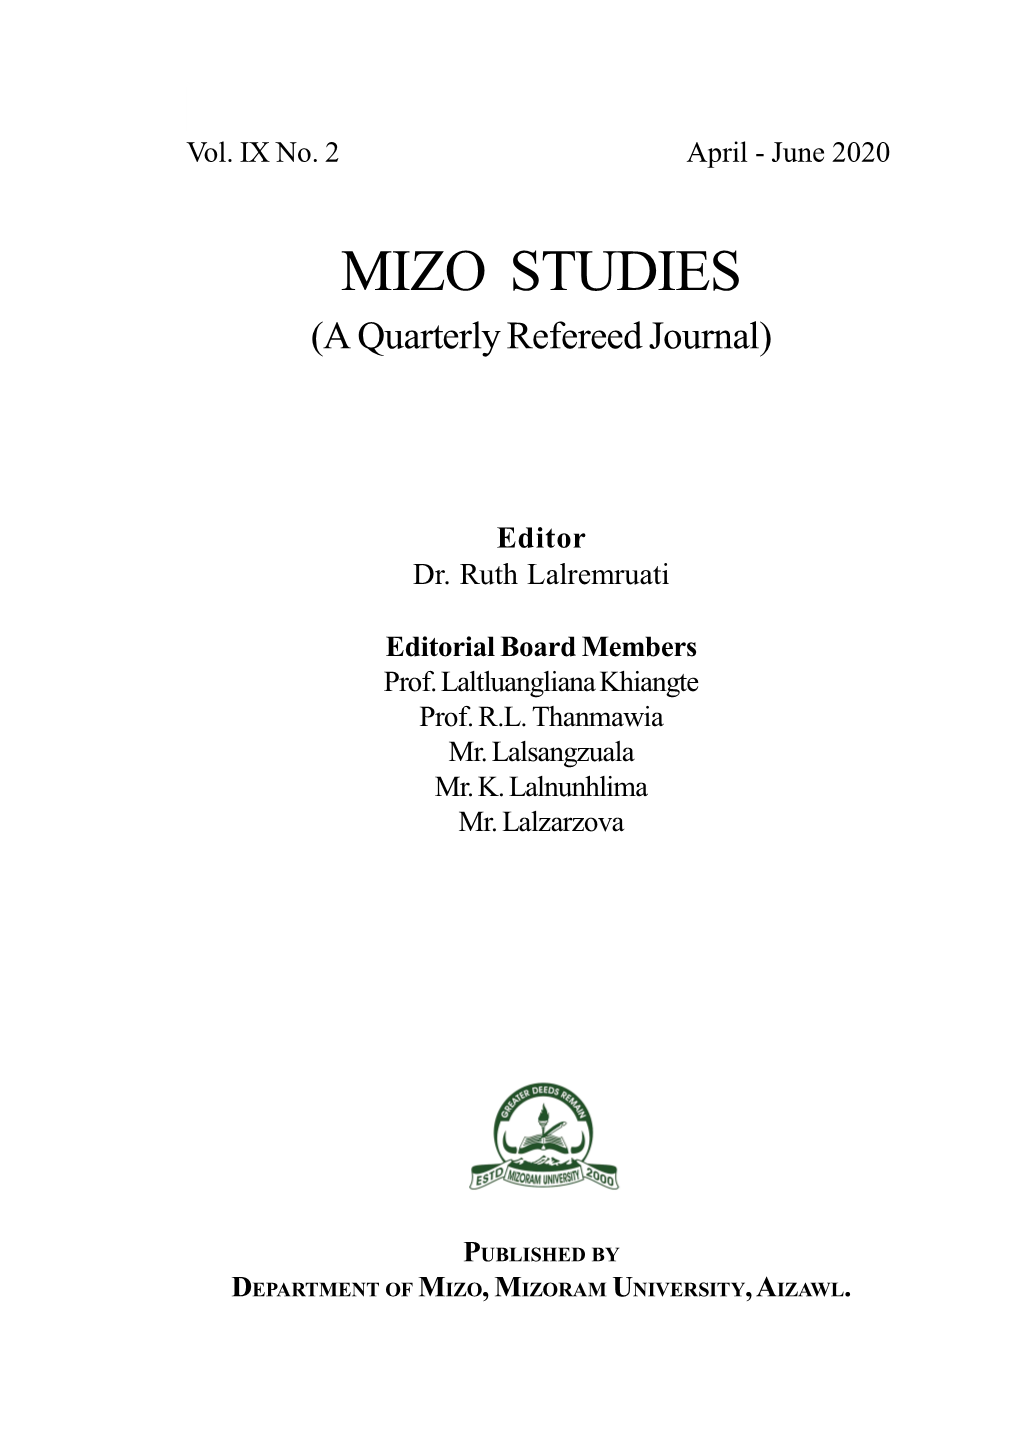 D:\Tul\Mizo Studies April-June